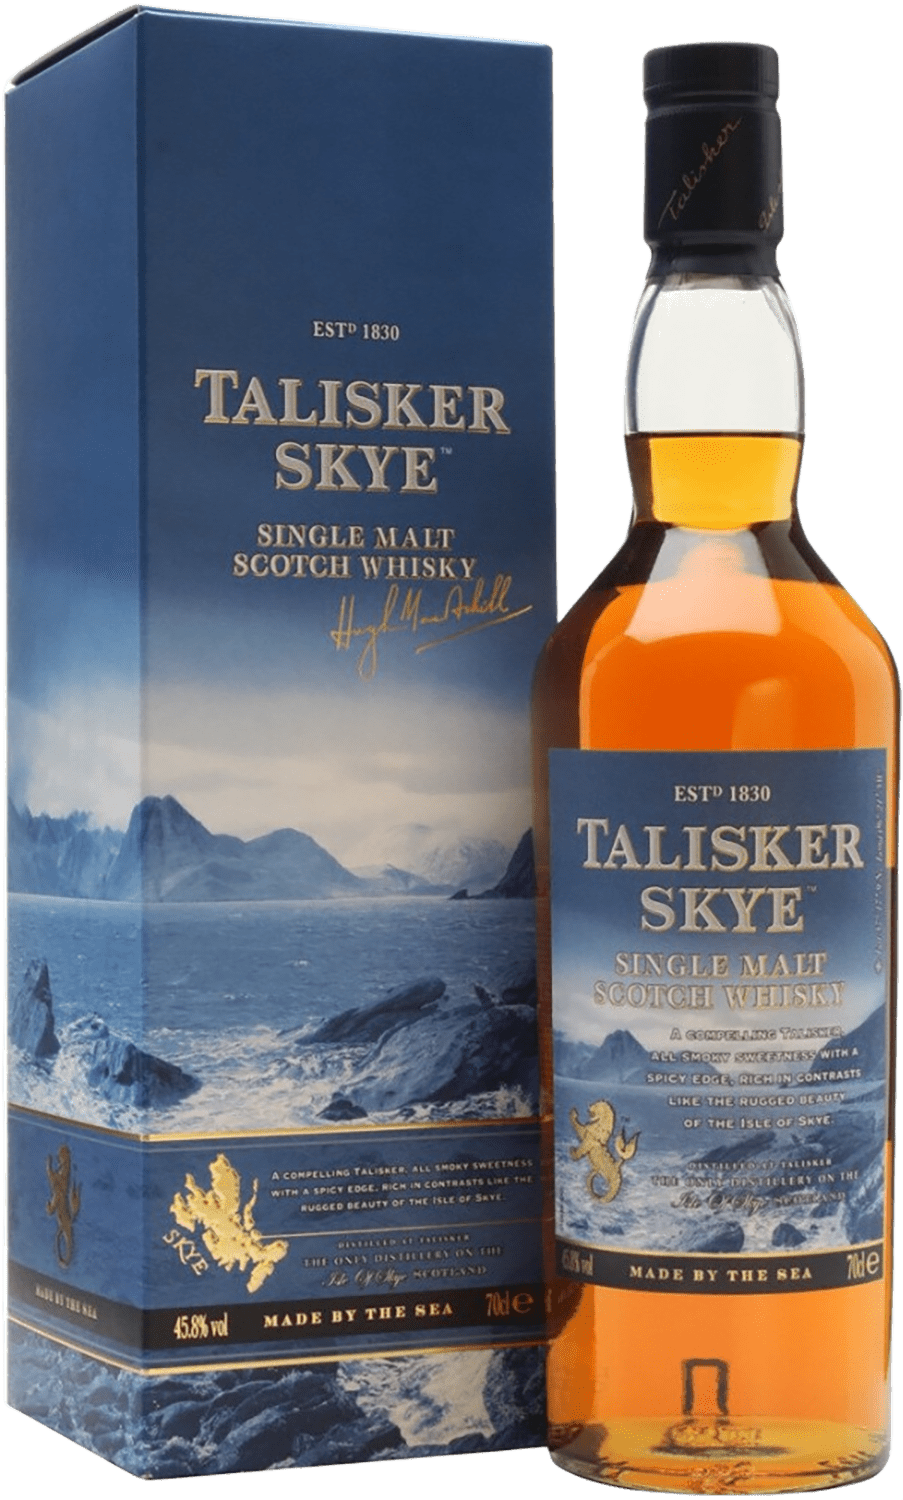 kavalan distillery select 2 single malt whisky gift box Talisker Skye Single Malt Scotch Whisky (gift box)